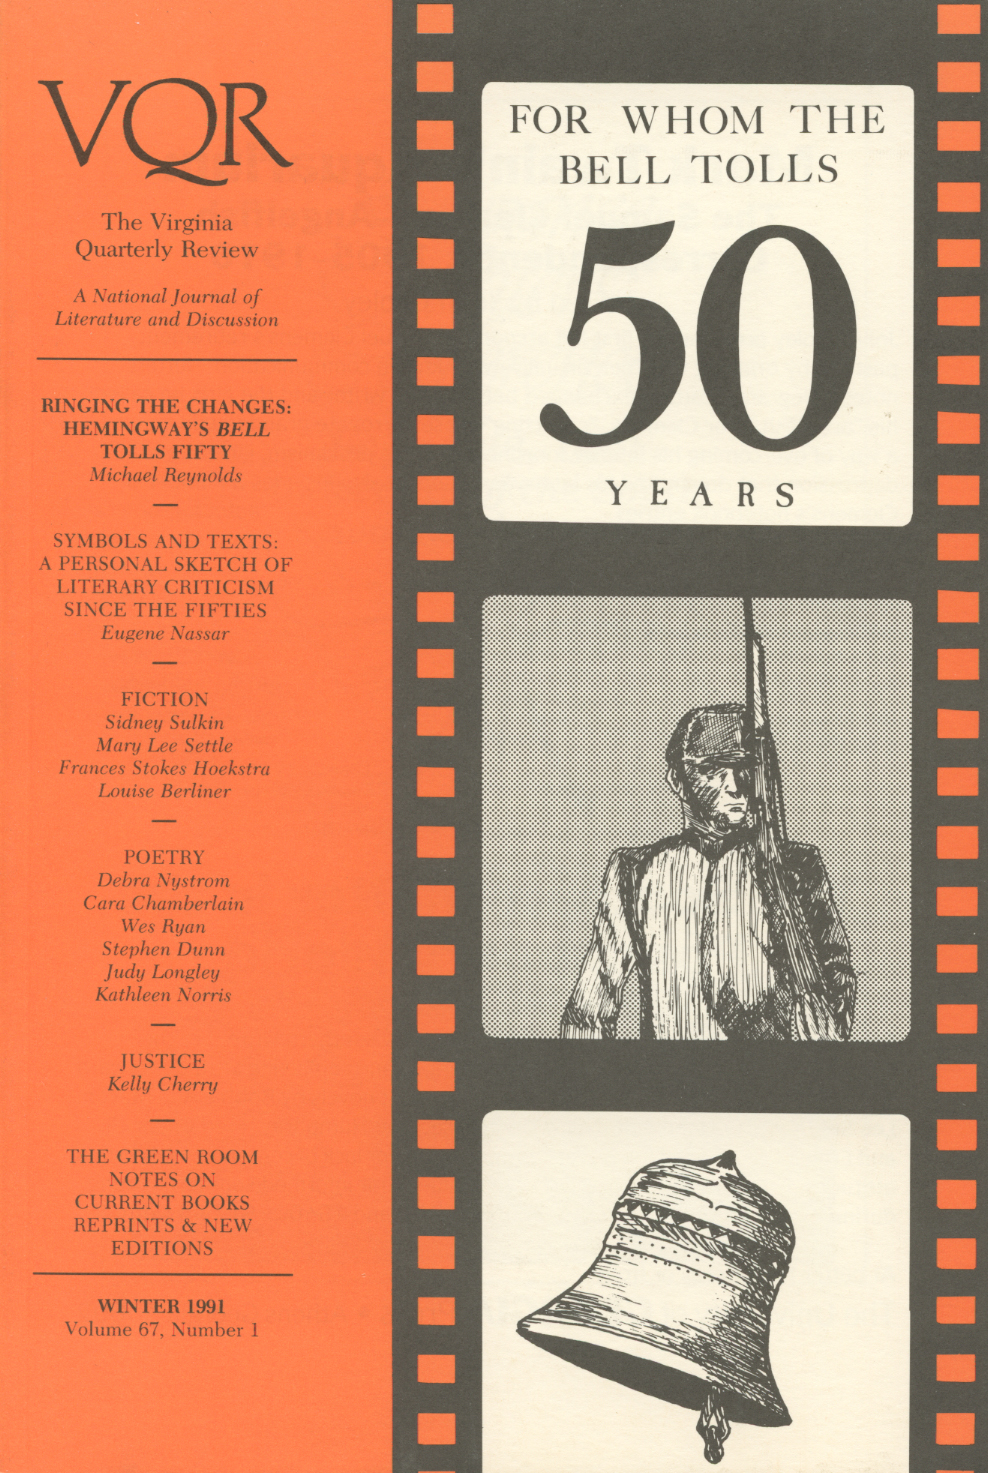 Virginia Quarterly Review, Winter 1991 cover